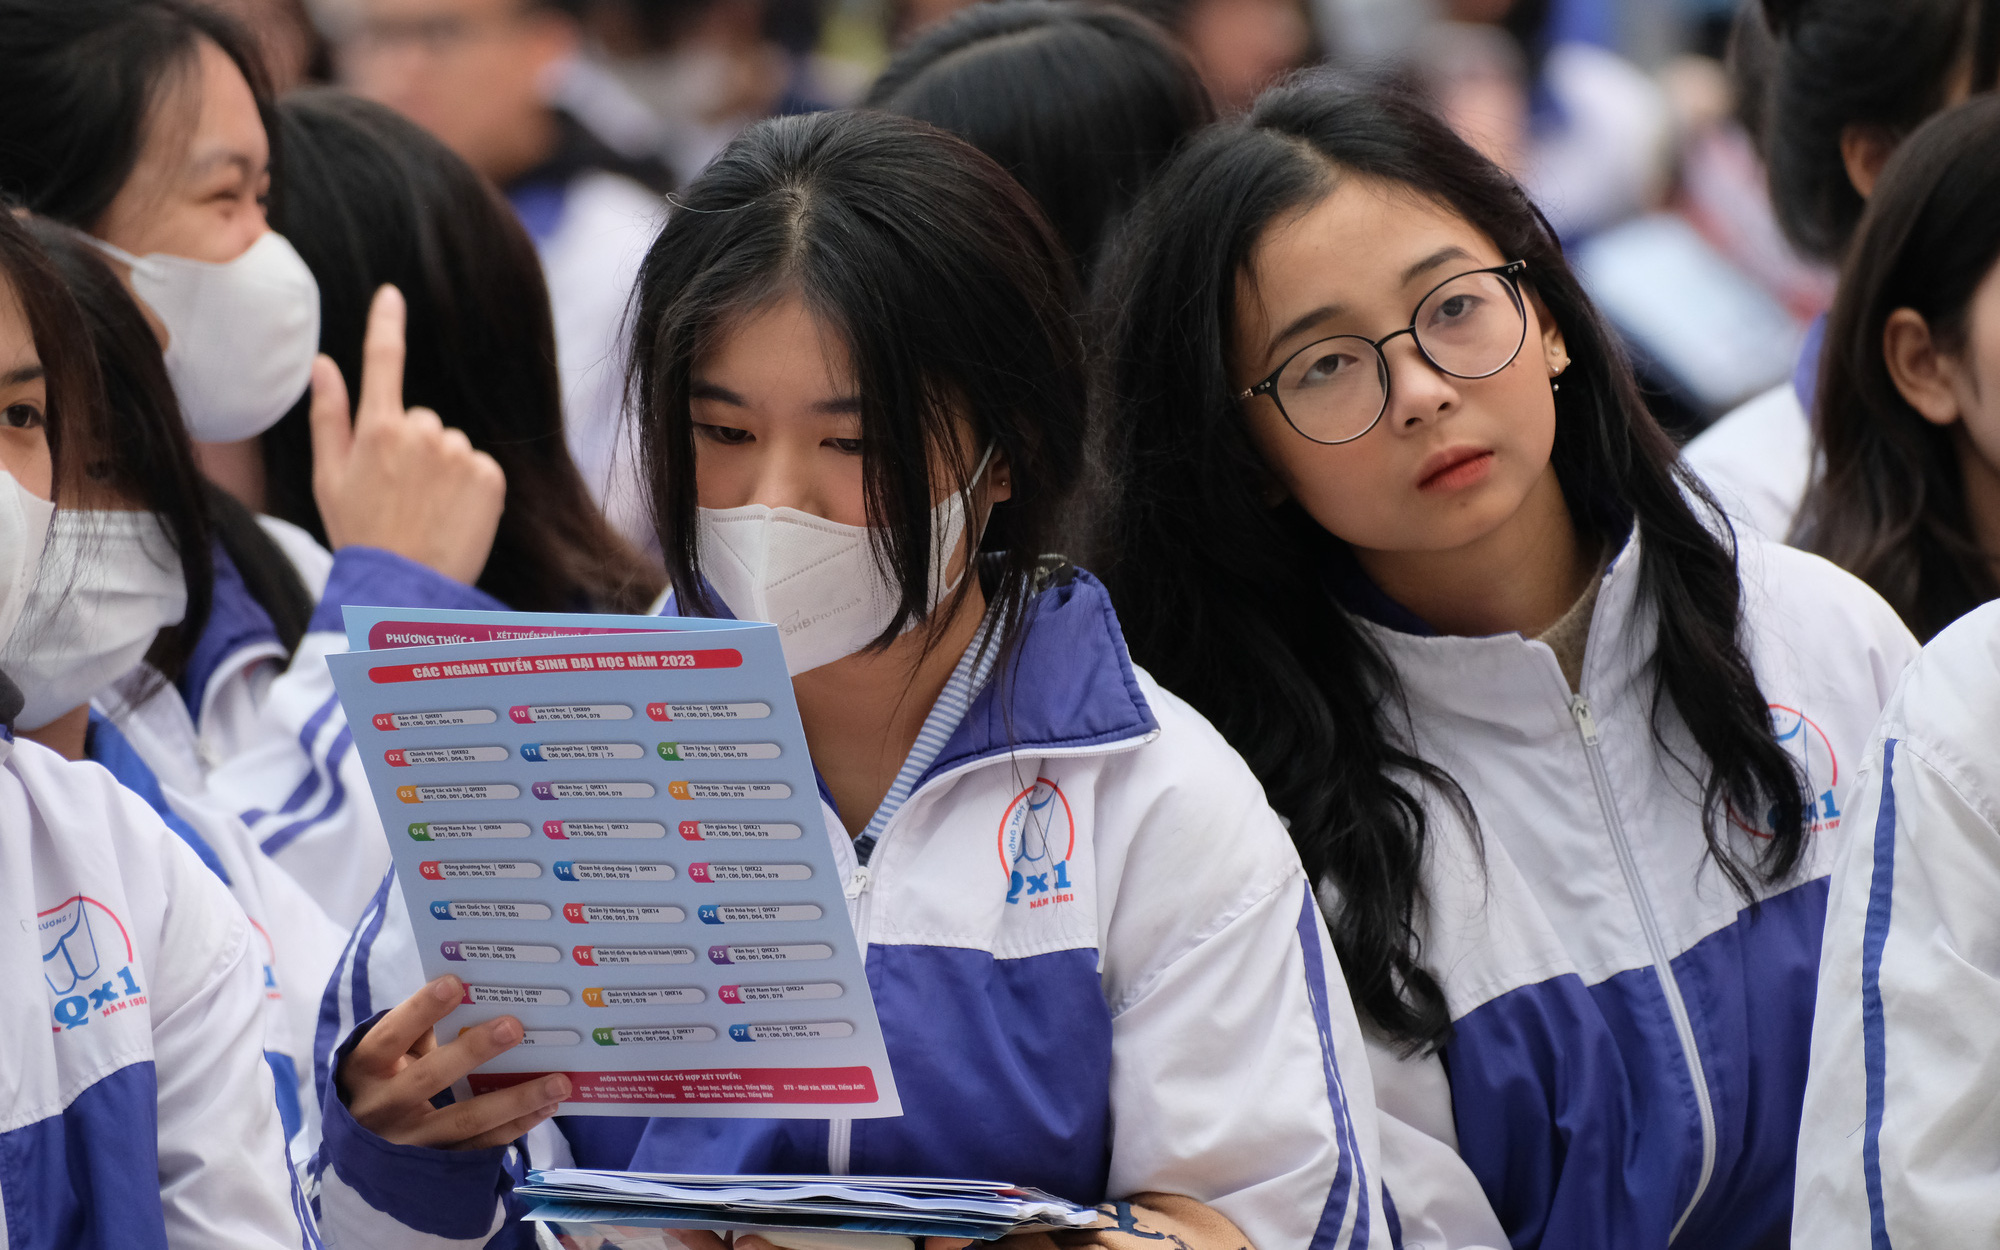 Việt Nam ở vị trí nào trong bảng xếp hạng đại học thế giới theo nhóm ngành của QS?